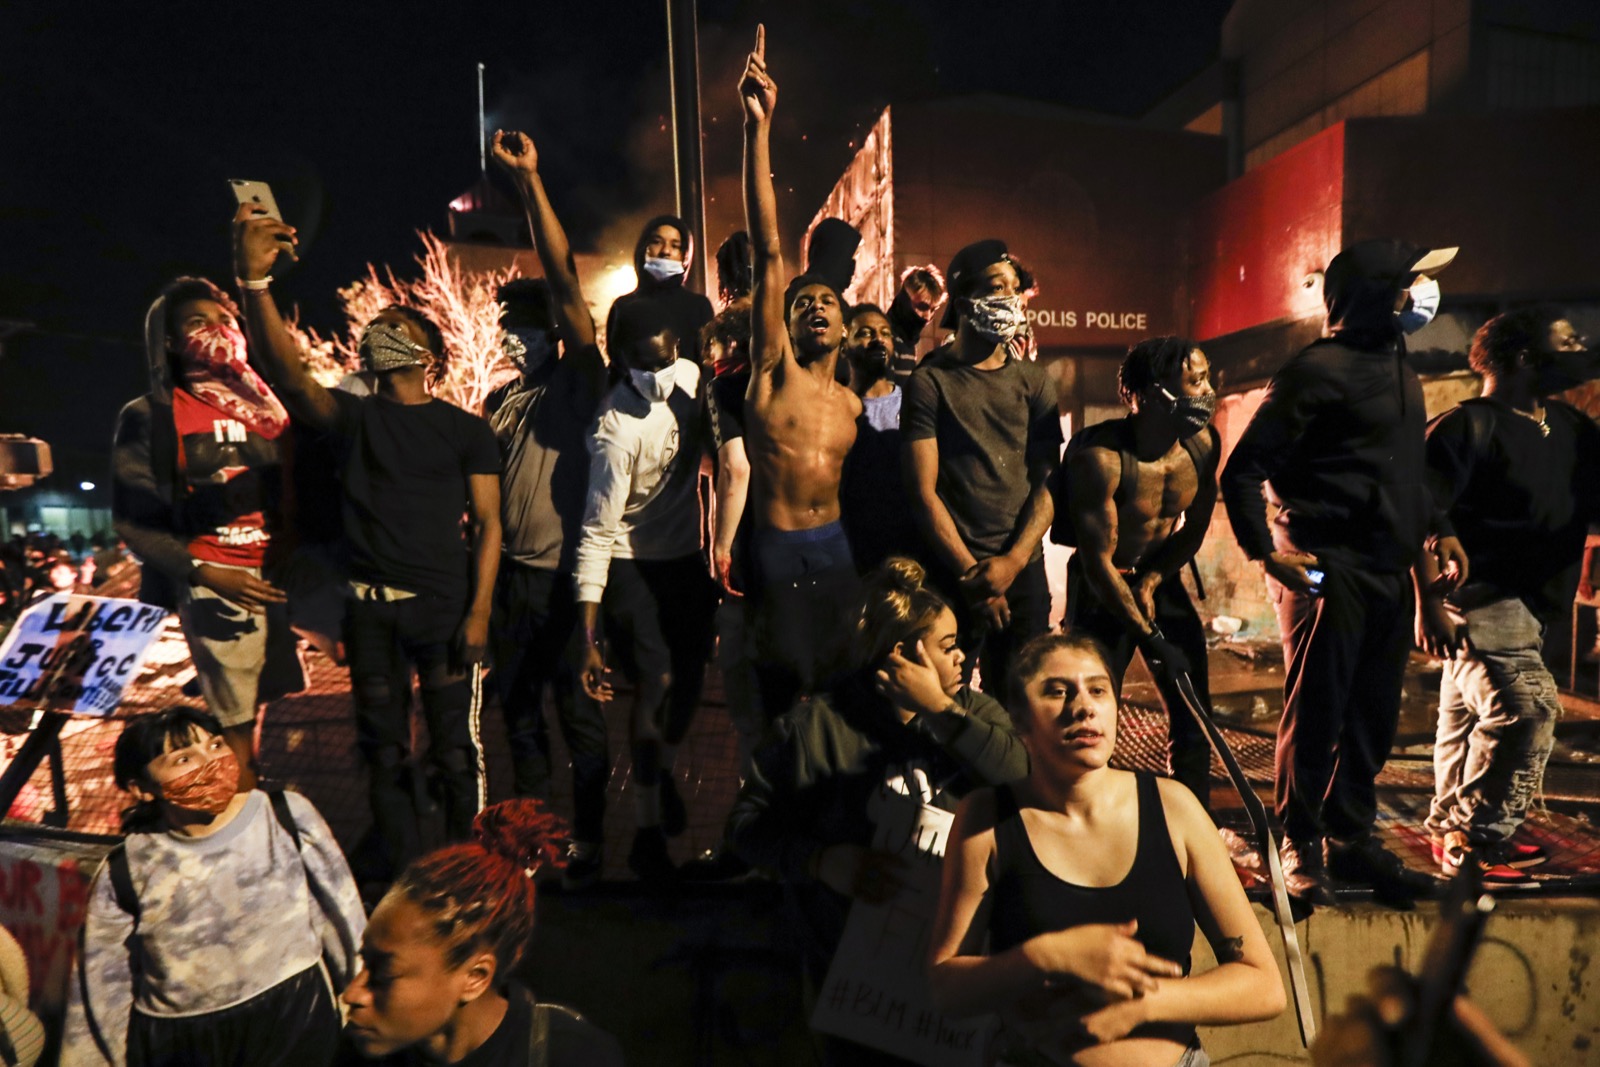 Đa số người biểu tình là người da đen. Ảnh: AP Photo/John Minchillo